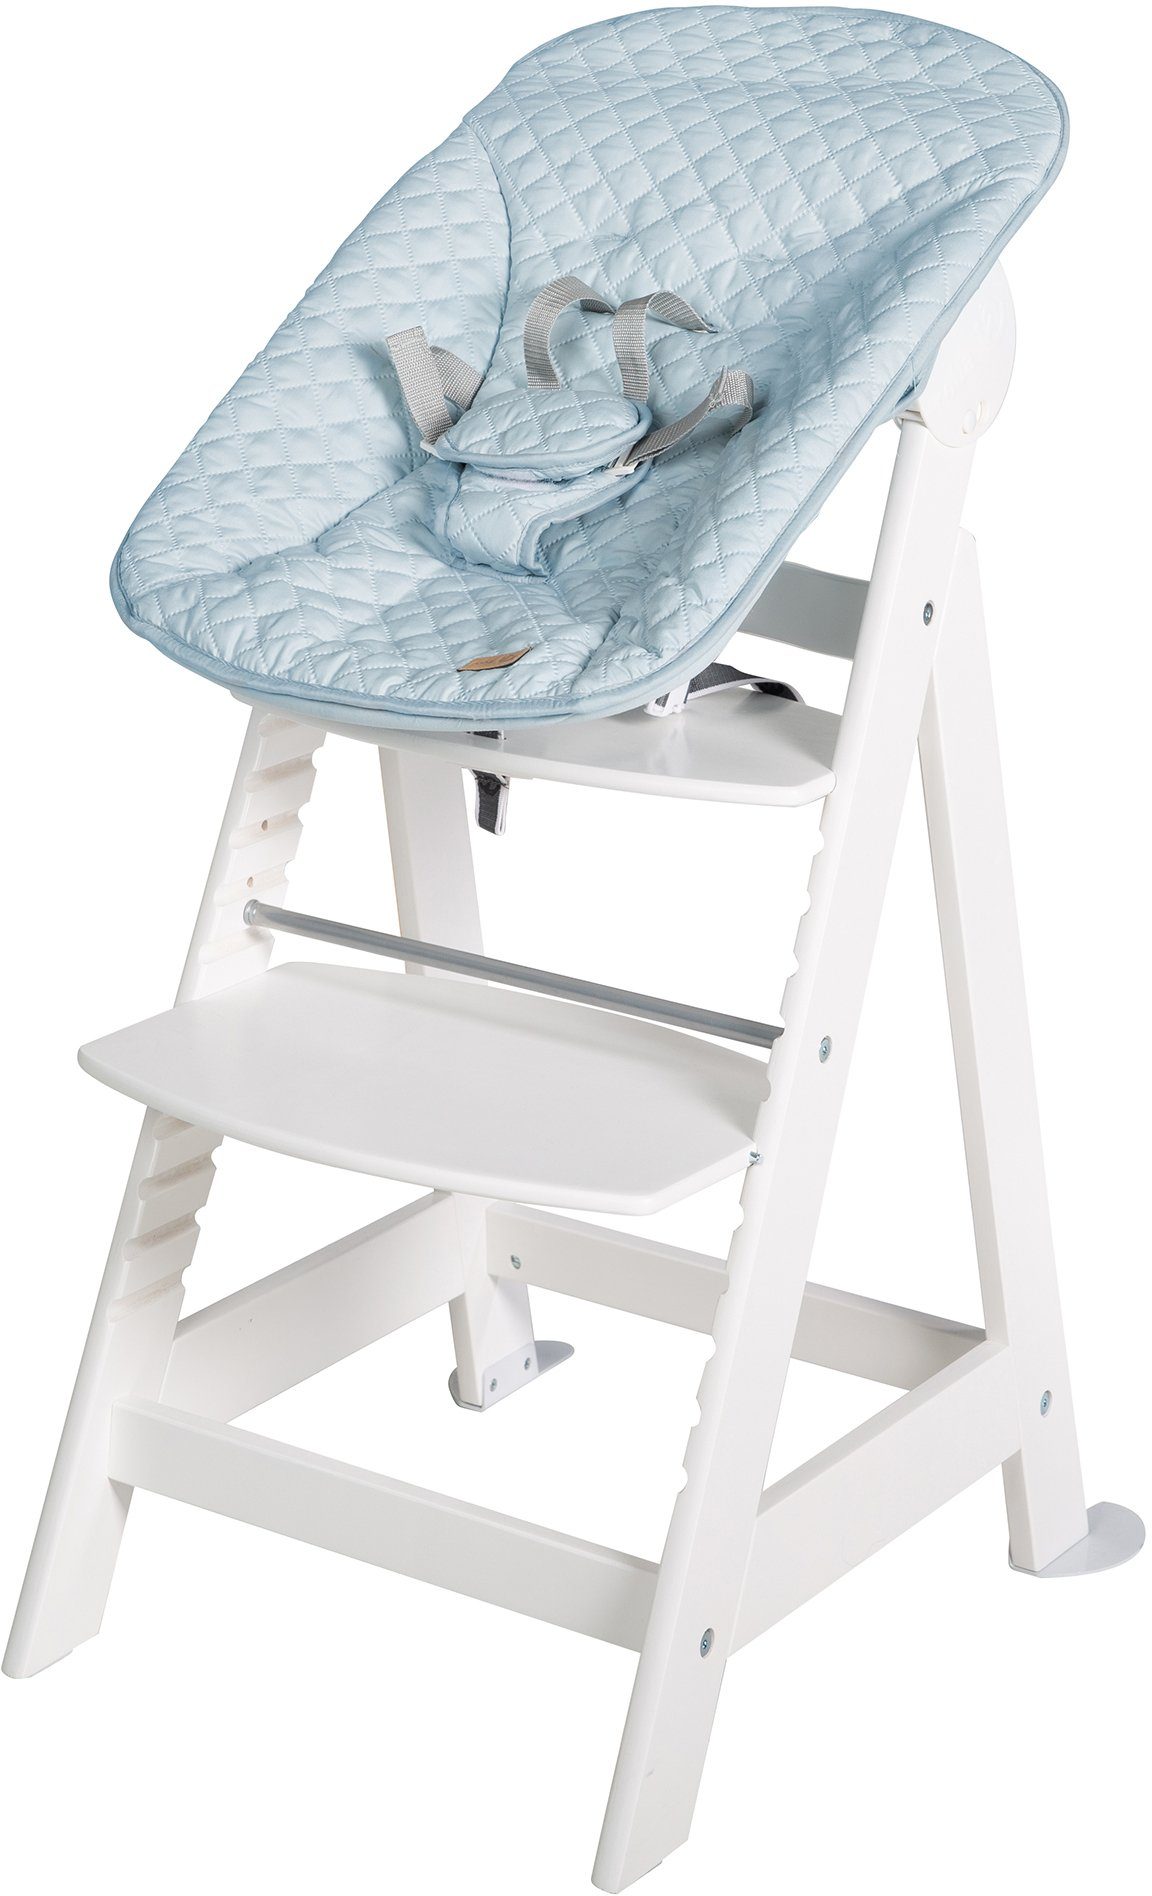 roba® Hochstuhl Treppenhochstuhl 2-in-1 Born Style, hellblau/sky/weiß mit Neugeborenen-Aufsatz Up, Set